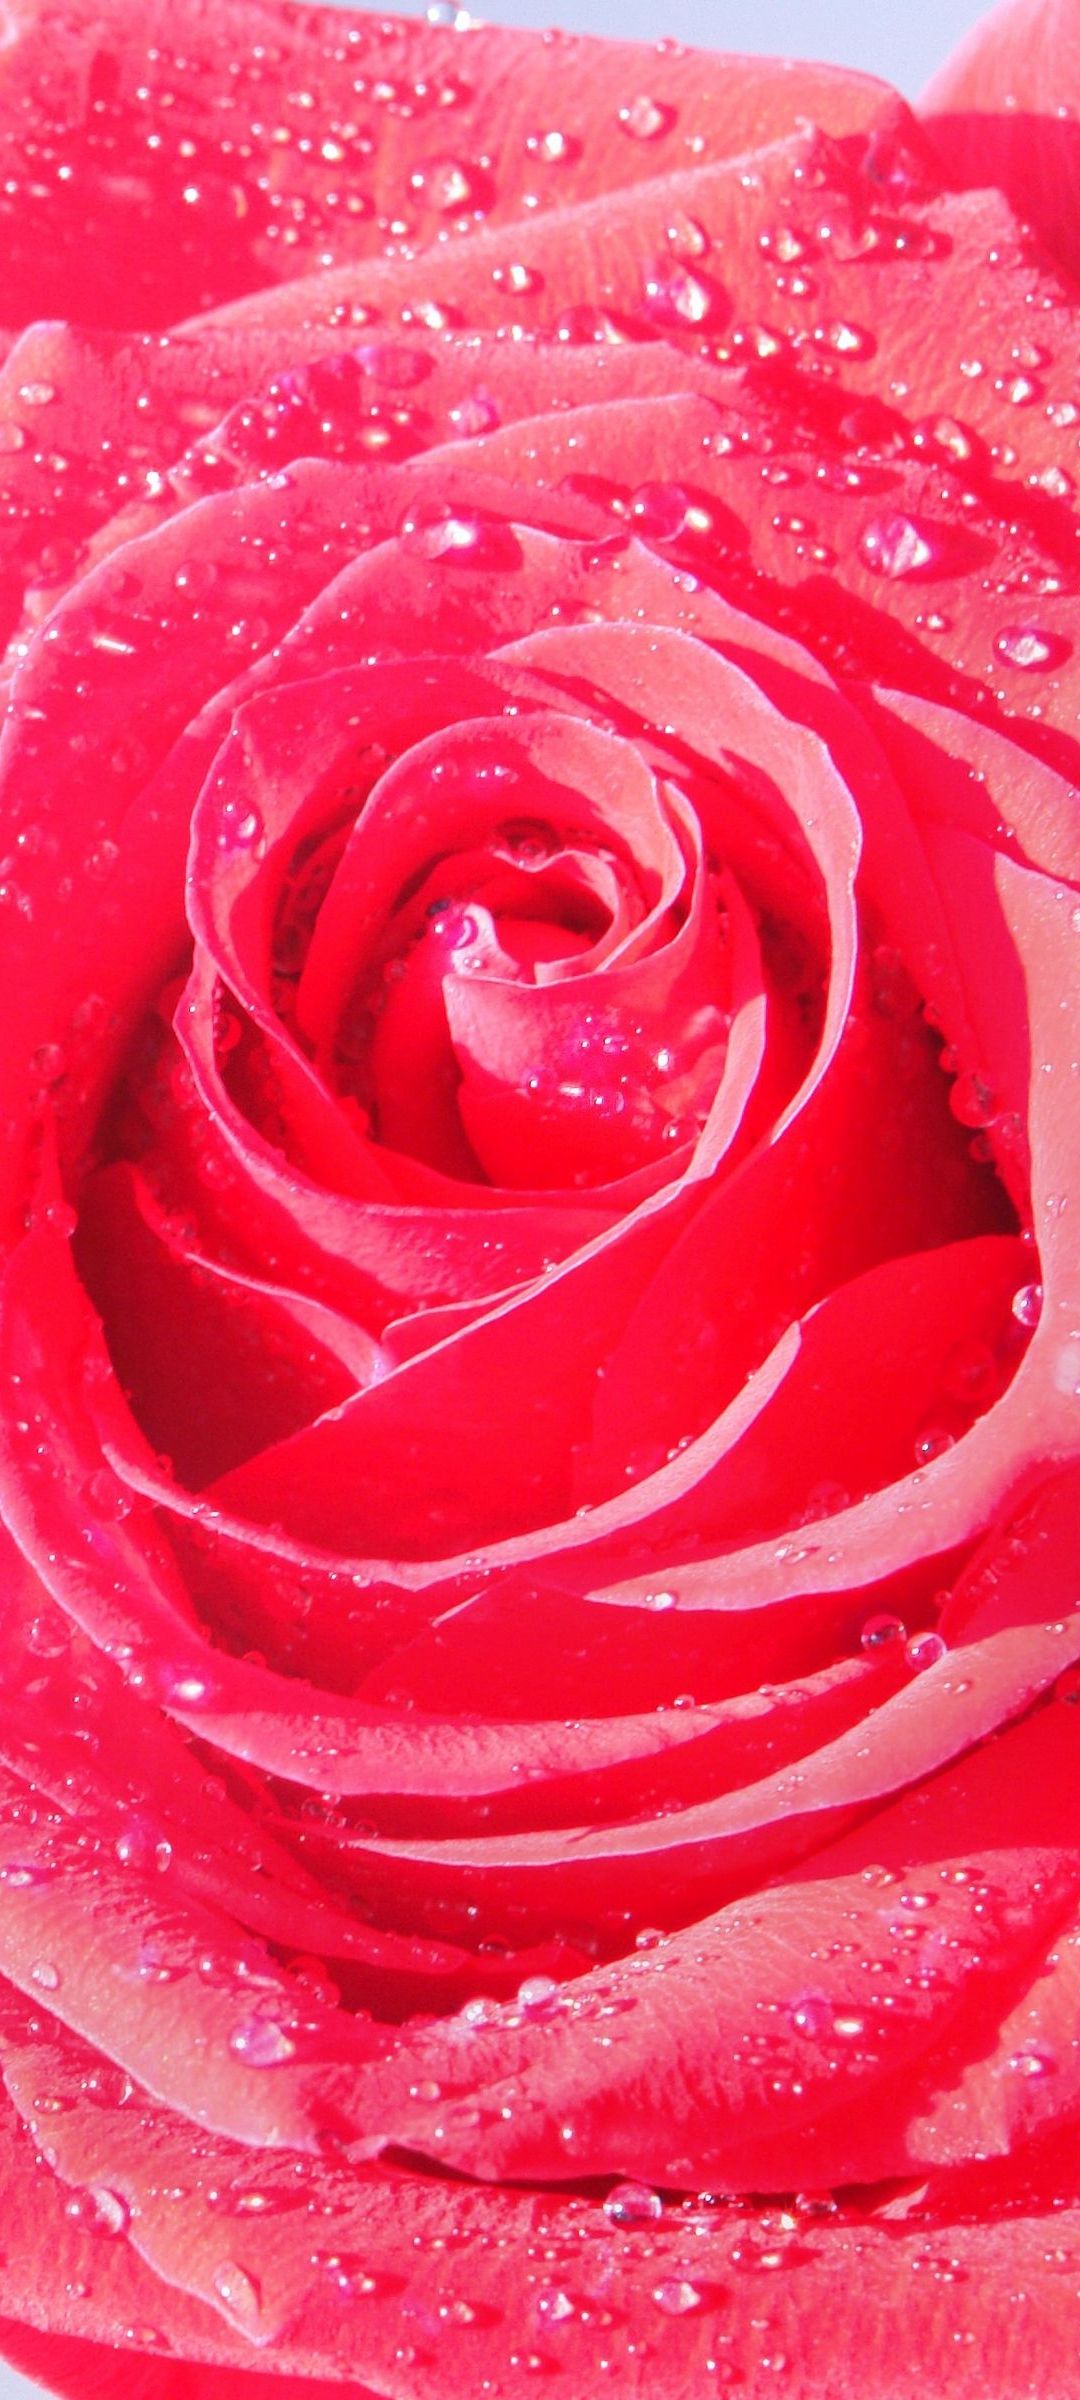 水滴 赤い薔薇 クローズアップ Galaxy S21 5g Androidスマホ壁紙 待ち受け スマラン